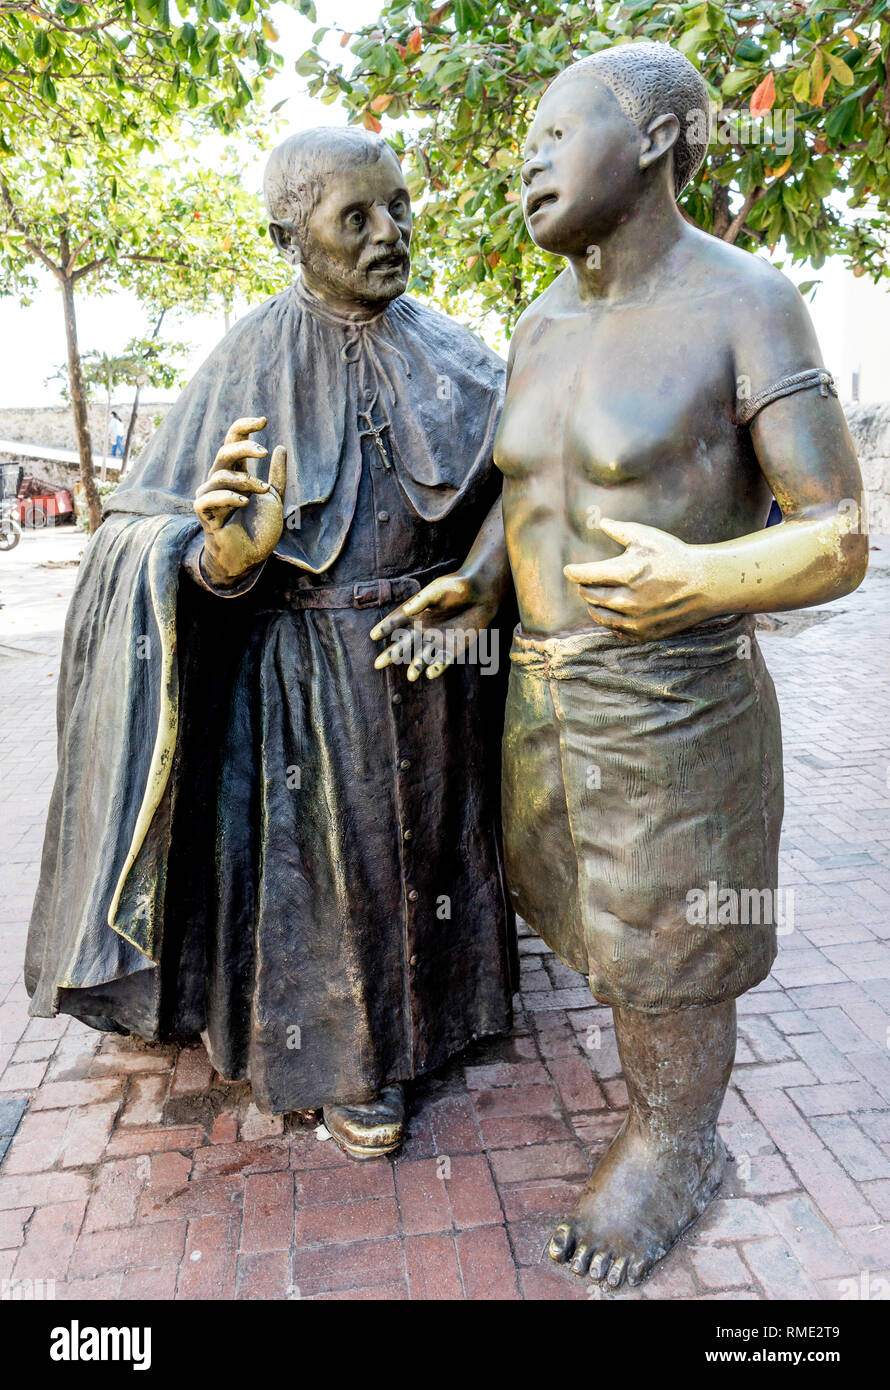 Statue en bronze de Saint Pierre Claver et un esclave de l'Amérique du Sud Colombie carthagène Banque D'Images